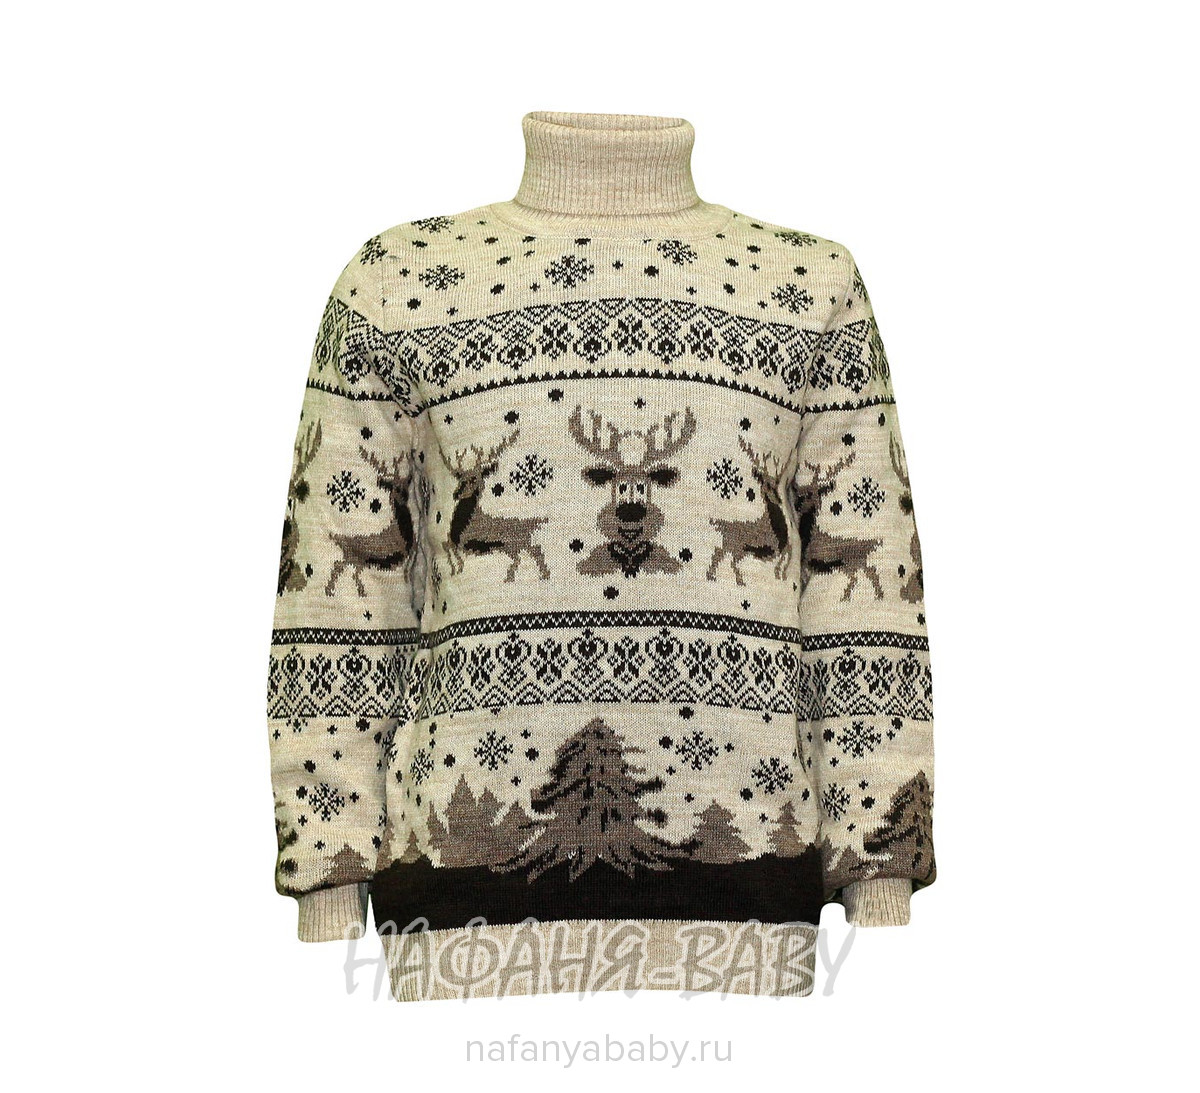 Вязанный теплый свитер CILIVILI арт: 508, 10-15 лет, 5-9 лет, оптом Турция